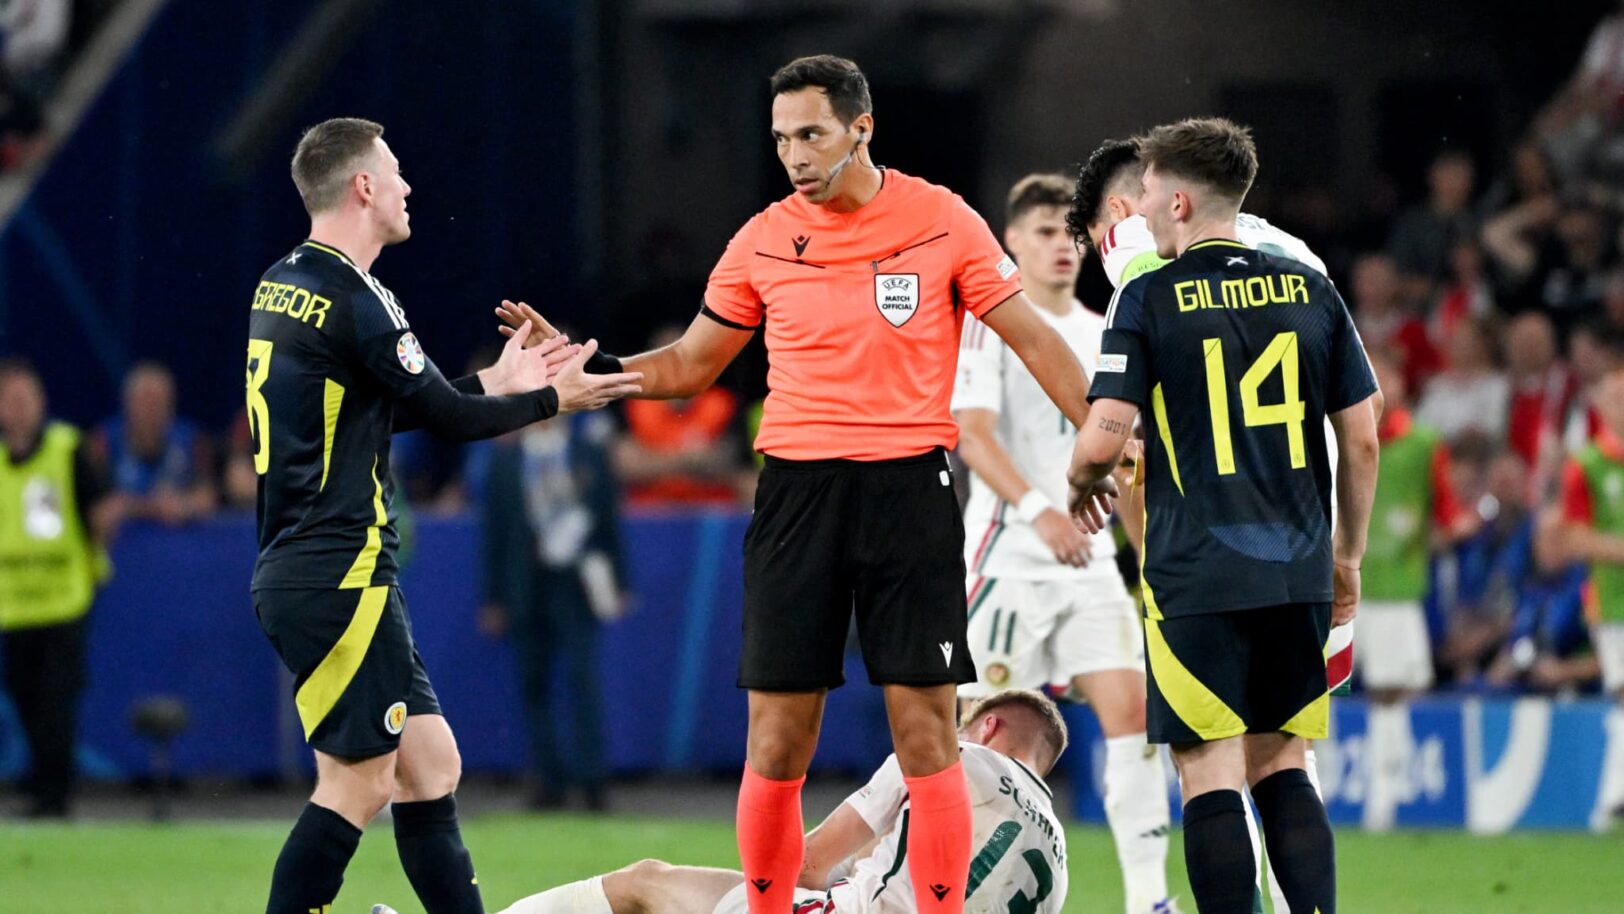  l'UEFA expulse un arbitre argentin et ses assistants après un gros scandale